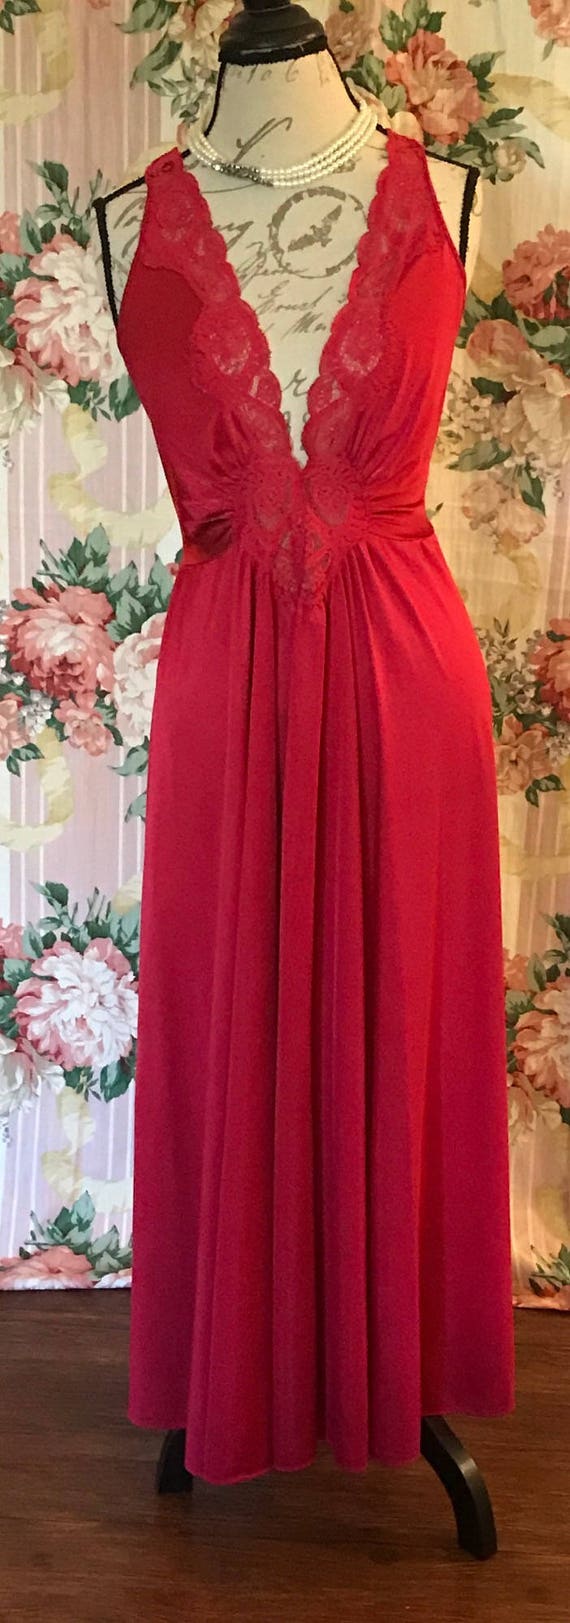 Rare Rose Red Olga Nightgown - image 2